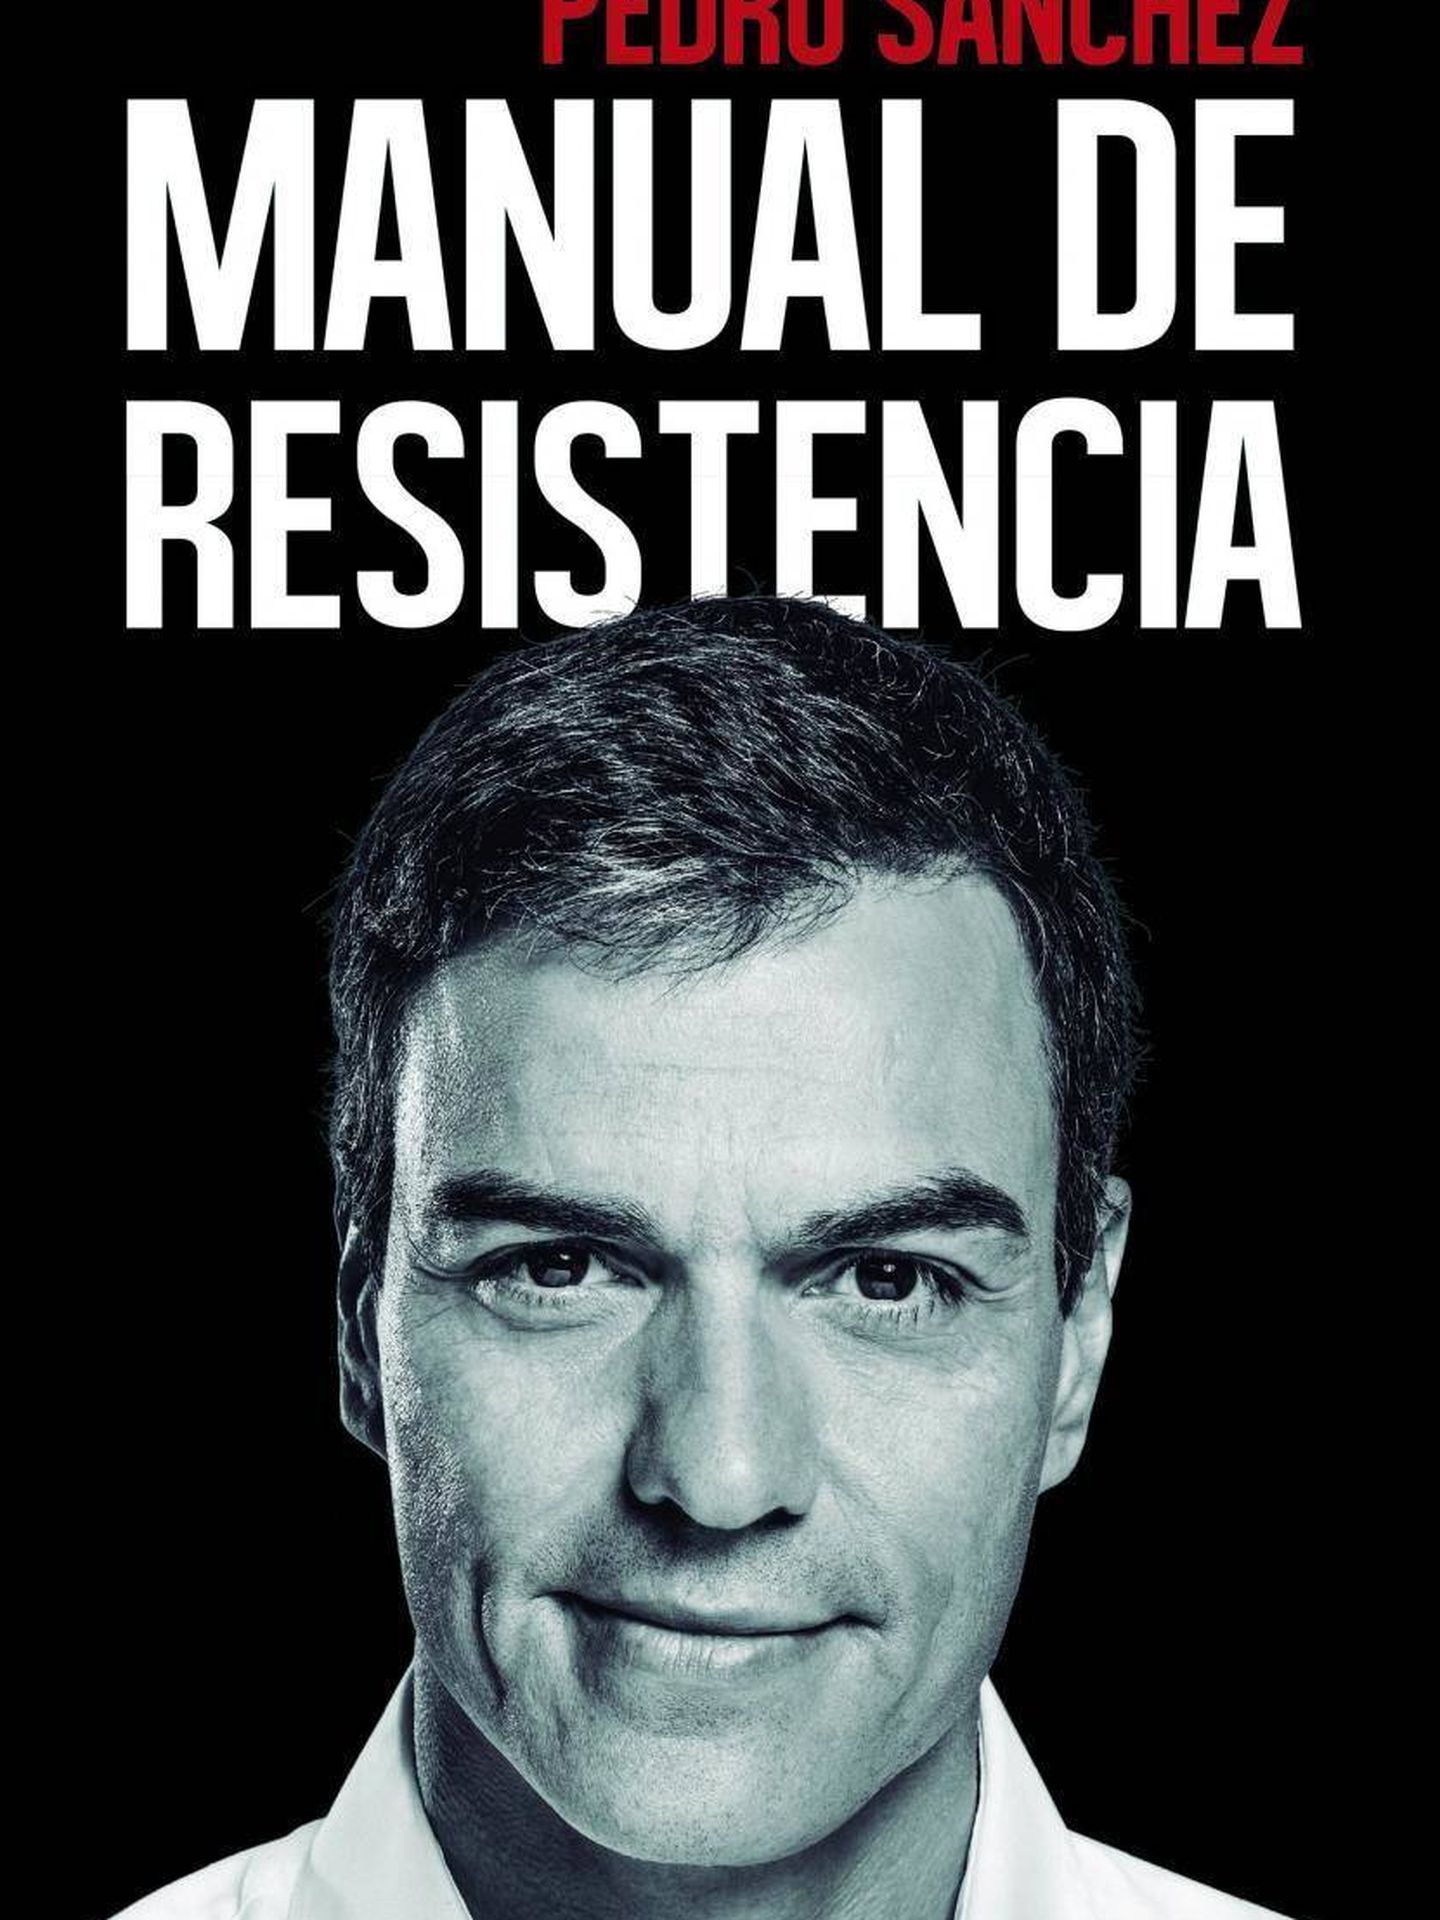 'Manual de resistencia', el libro firmado por Pedro Sánchez y editado por Península.